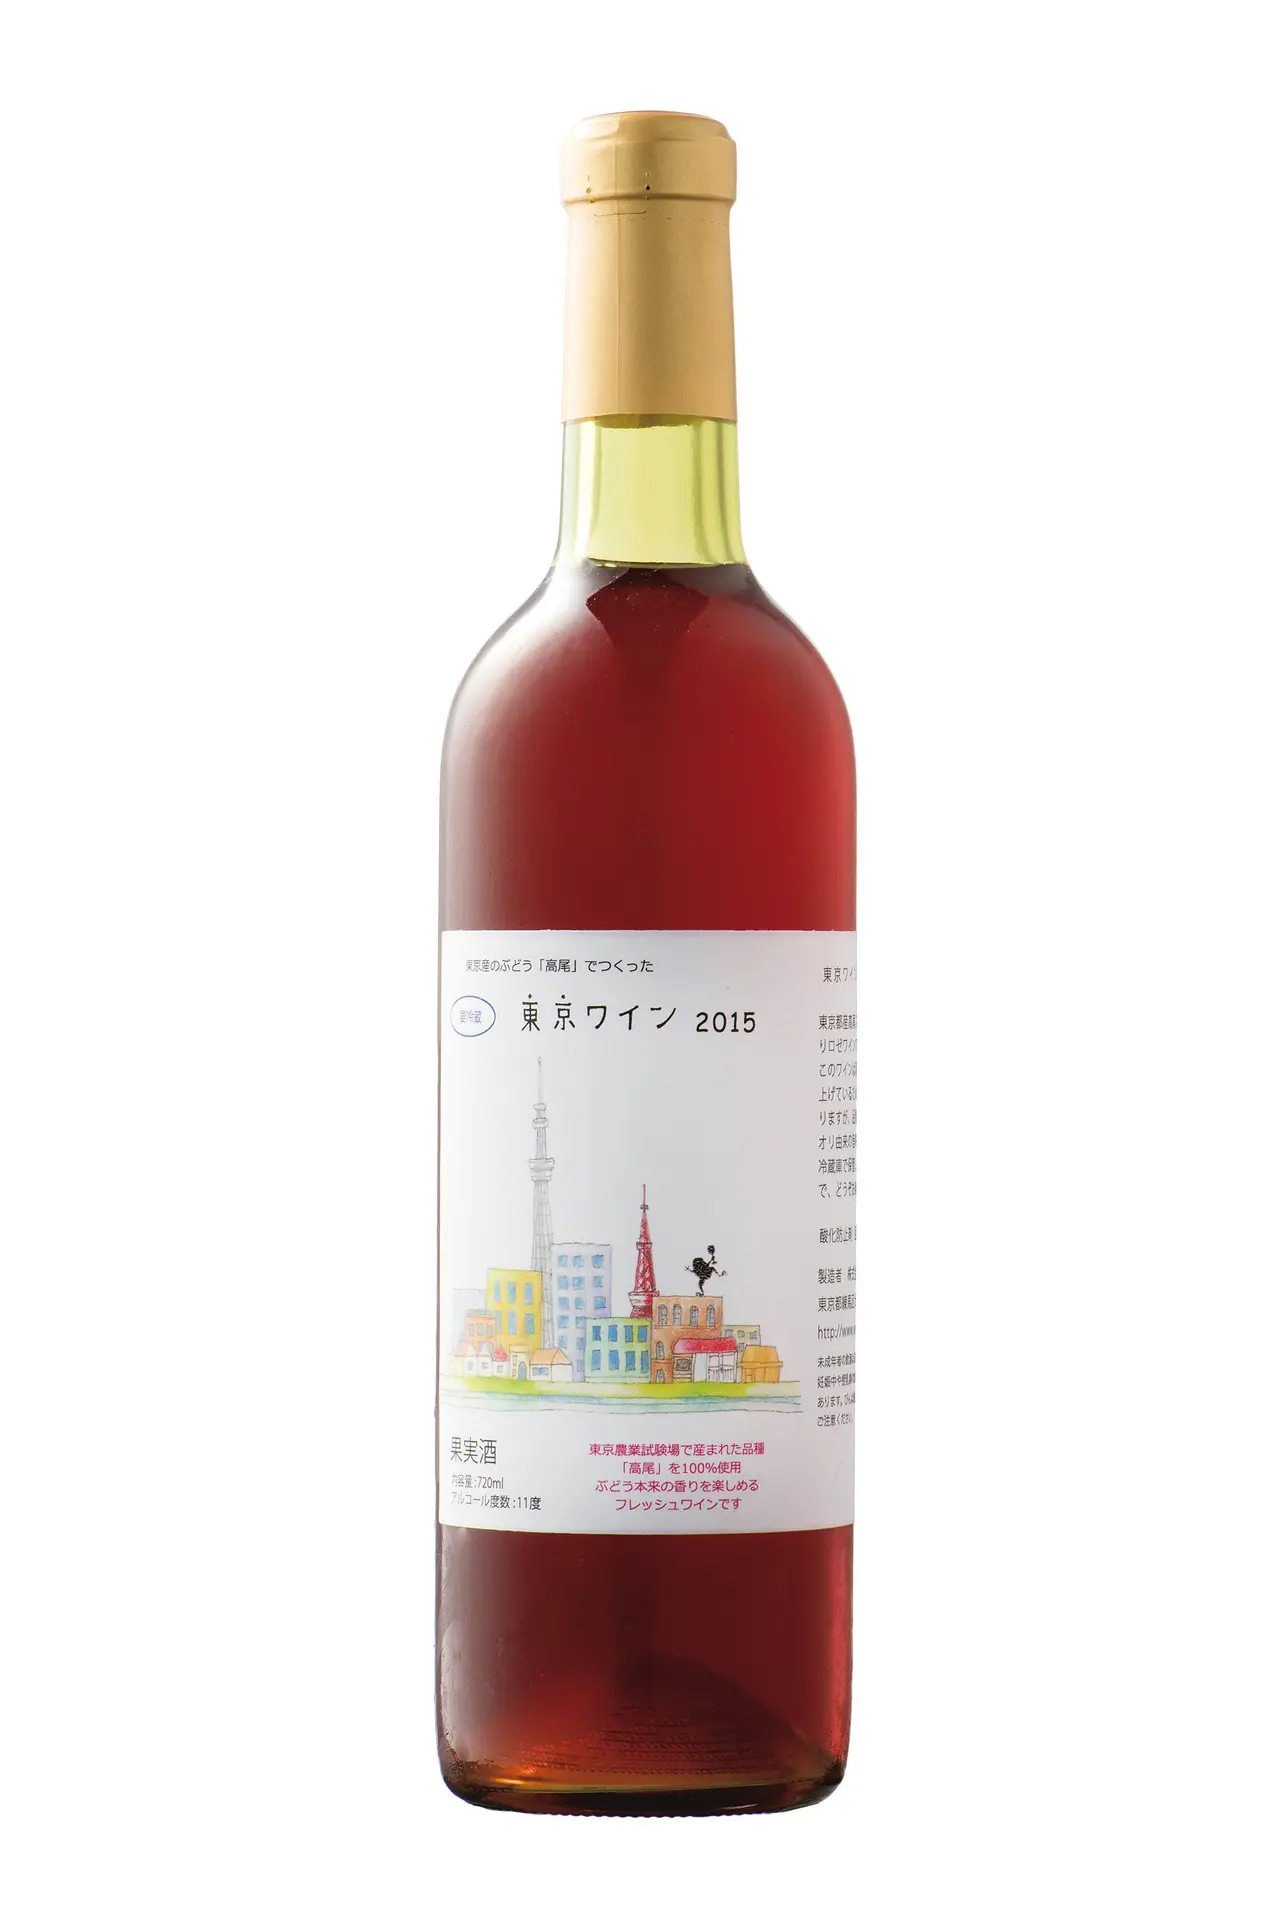 「手づくり」にこだわった東京ワイナリーの「東京ワイン 高尾ロゼ 2015」_1_2